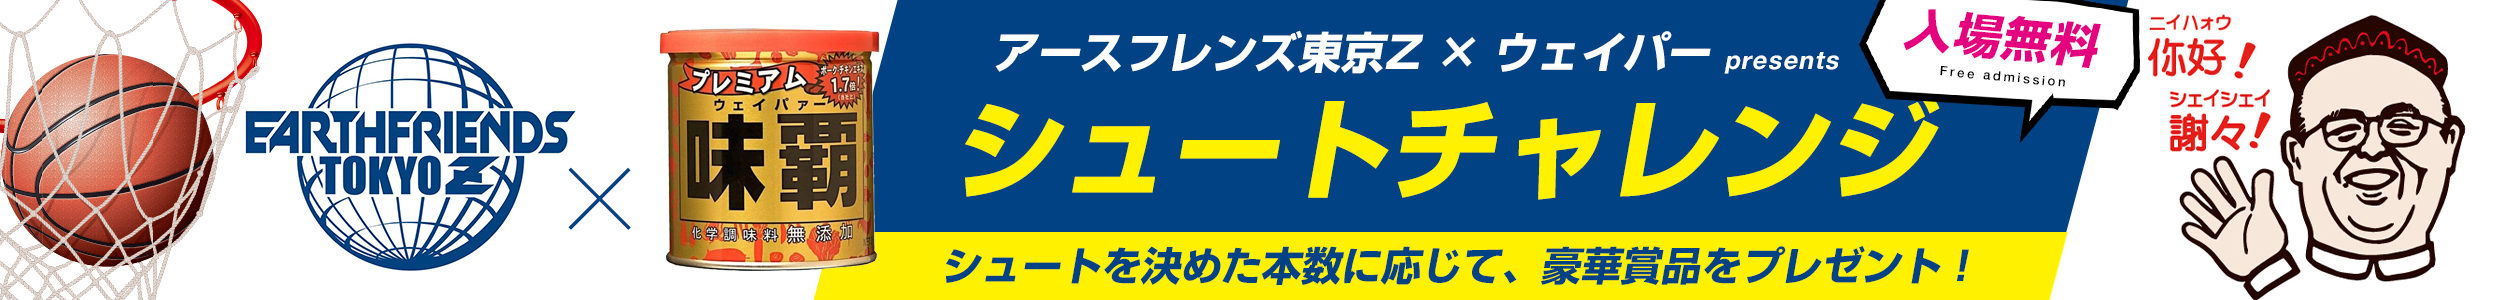 アースフレンズ東京Z × ウェイパー presents シュートチャレンジ